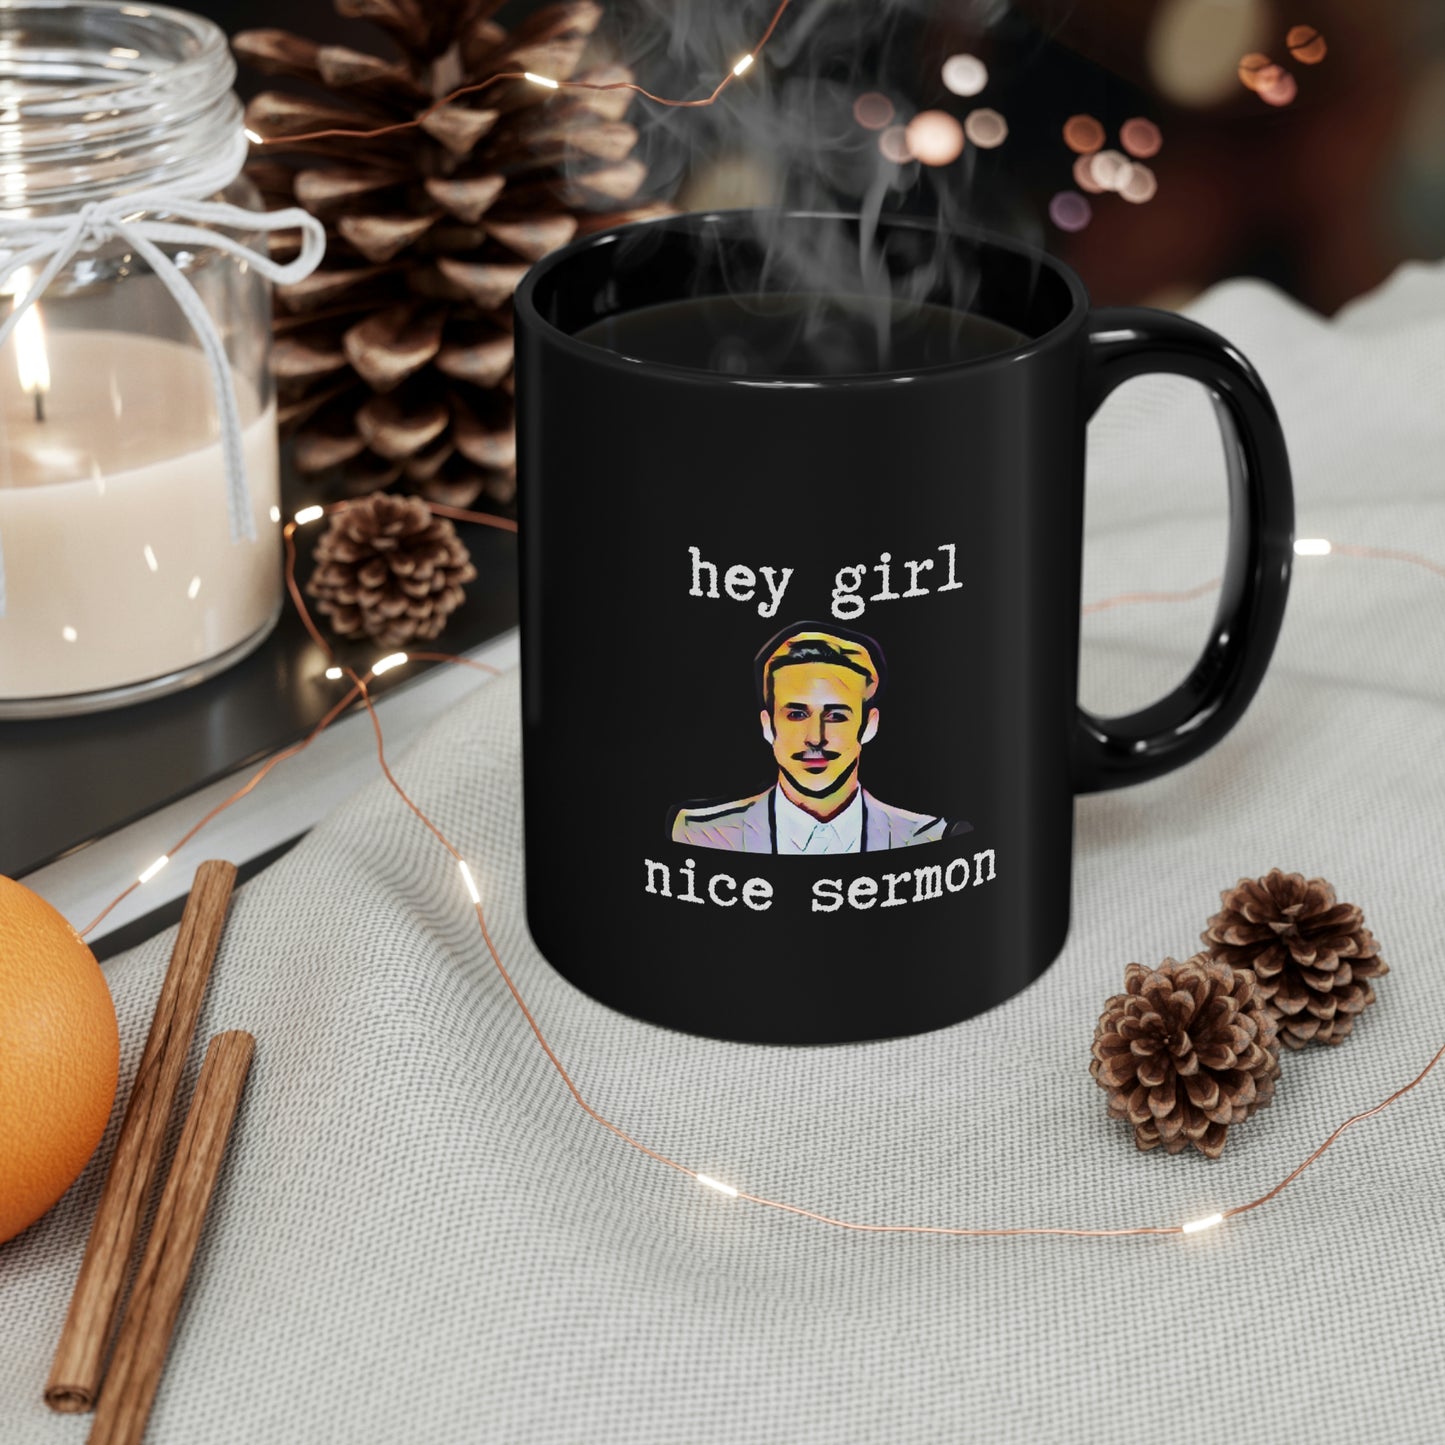 Hey Girl 11oz Black Mug Ryan Gosling Gift for Minister Gift for Pastor Gift for Ordination Gift for Clergy Gift for Deacon Gift